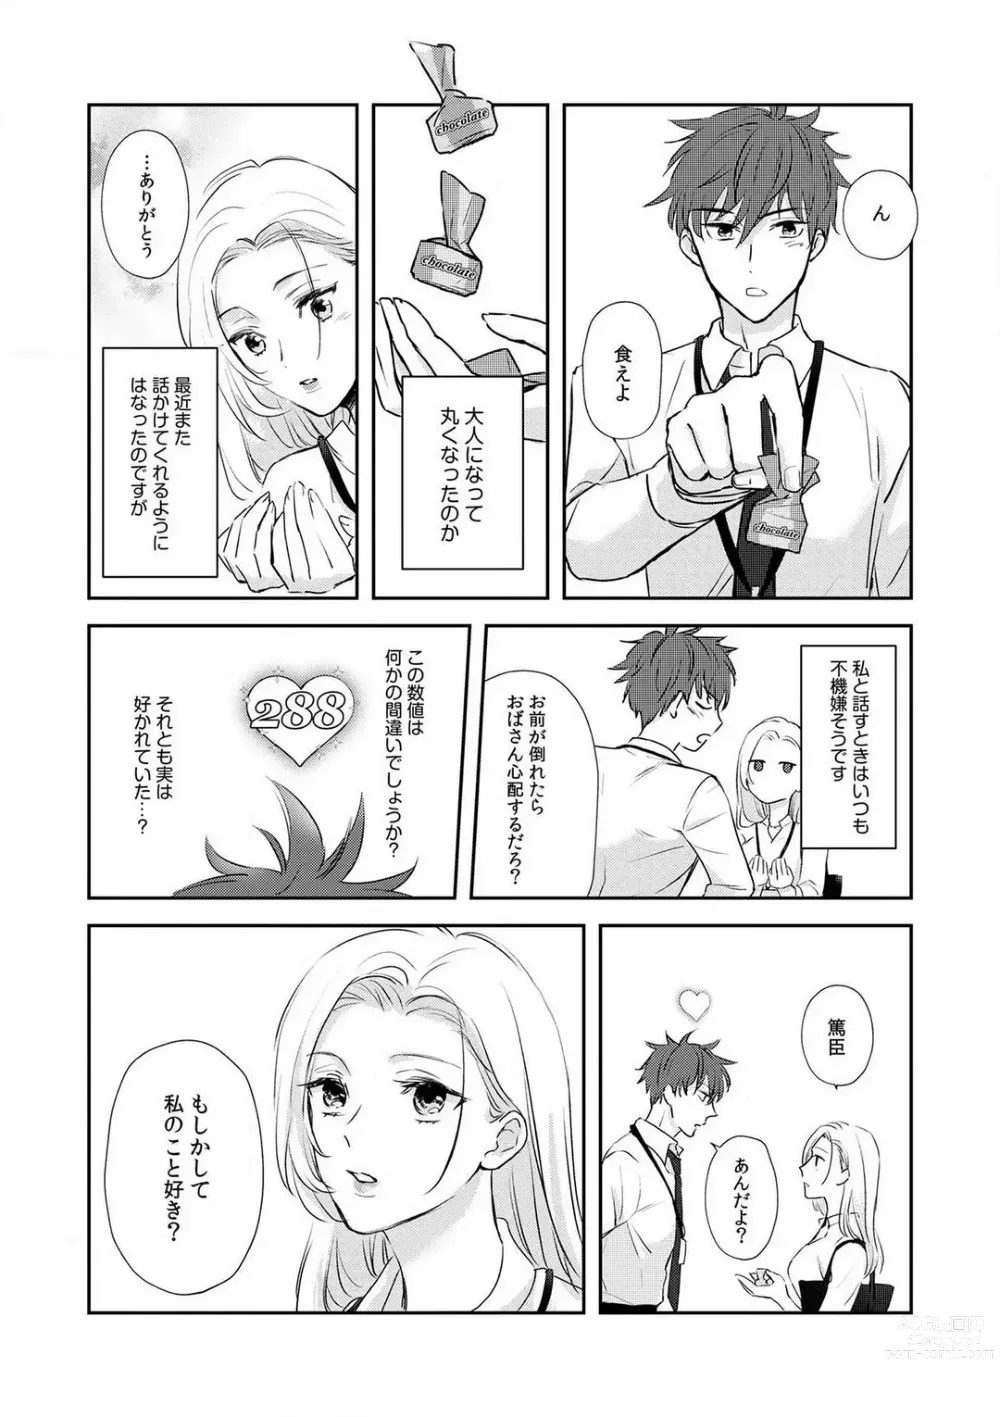 Page 10 of manga Taiikukaikei Osananajimi wa Sekaiichi no Dekiaidanshi 〜 Zen Jinrui no Kōkan-do ga Aru hi Mieta Rikejo no Watashi~Chp.1-2